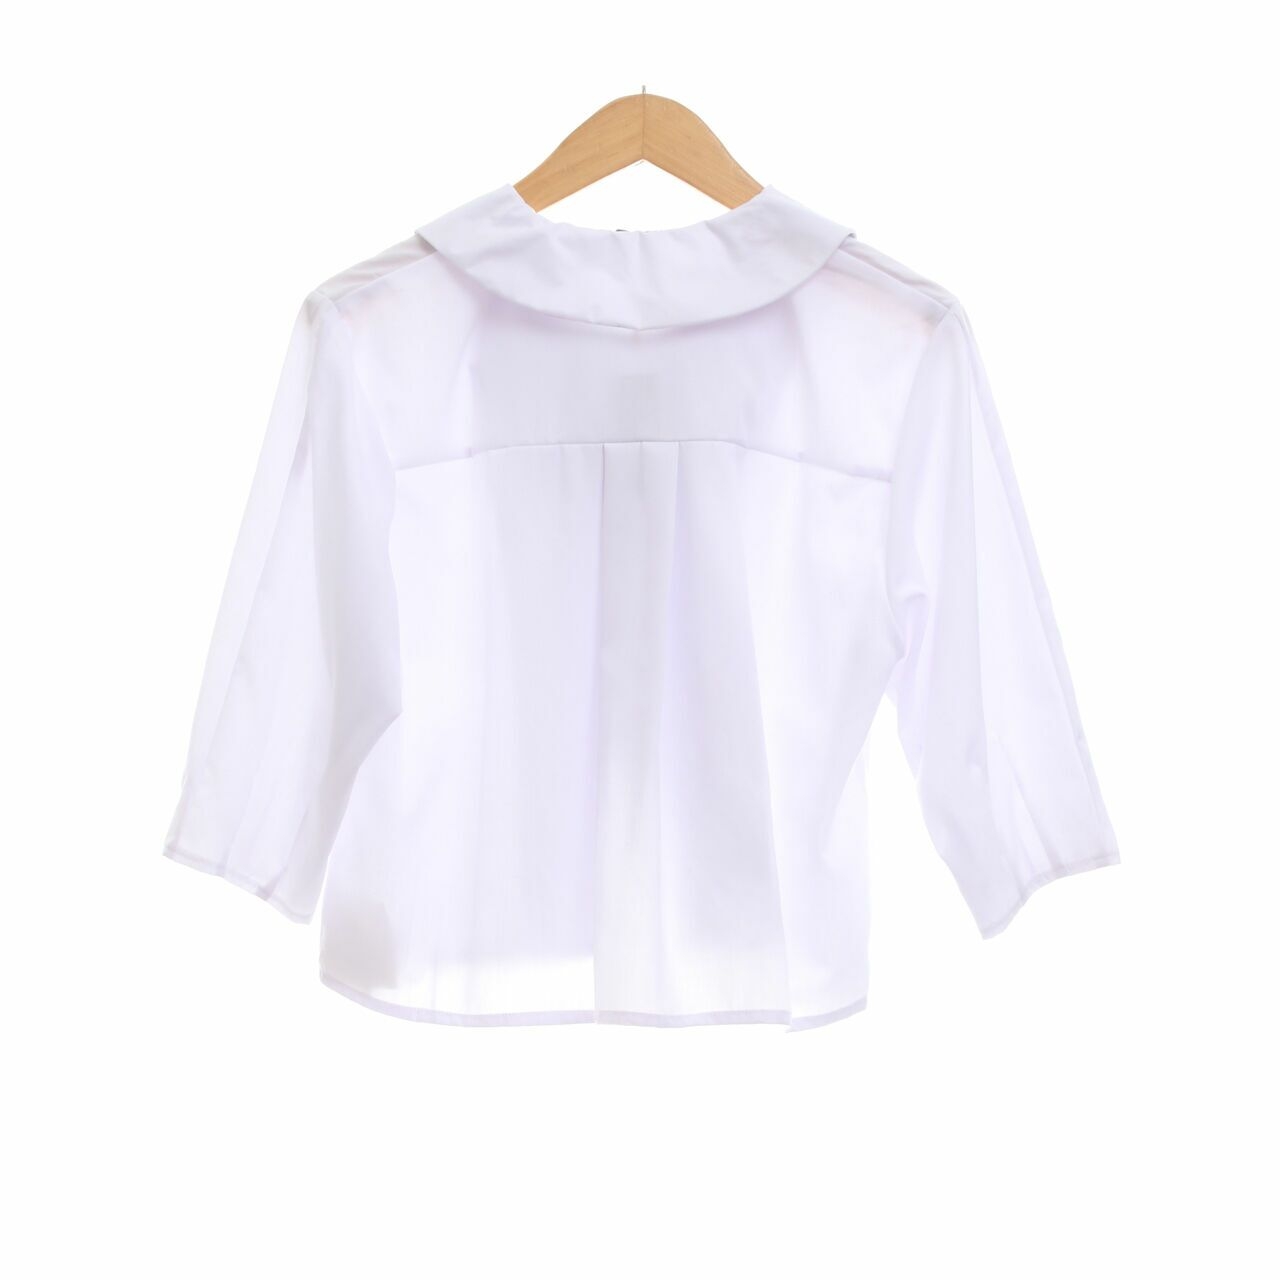 Grinitty White Shirt